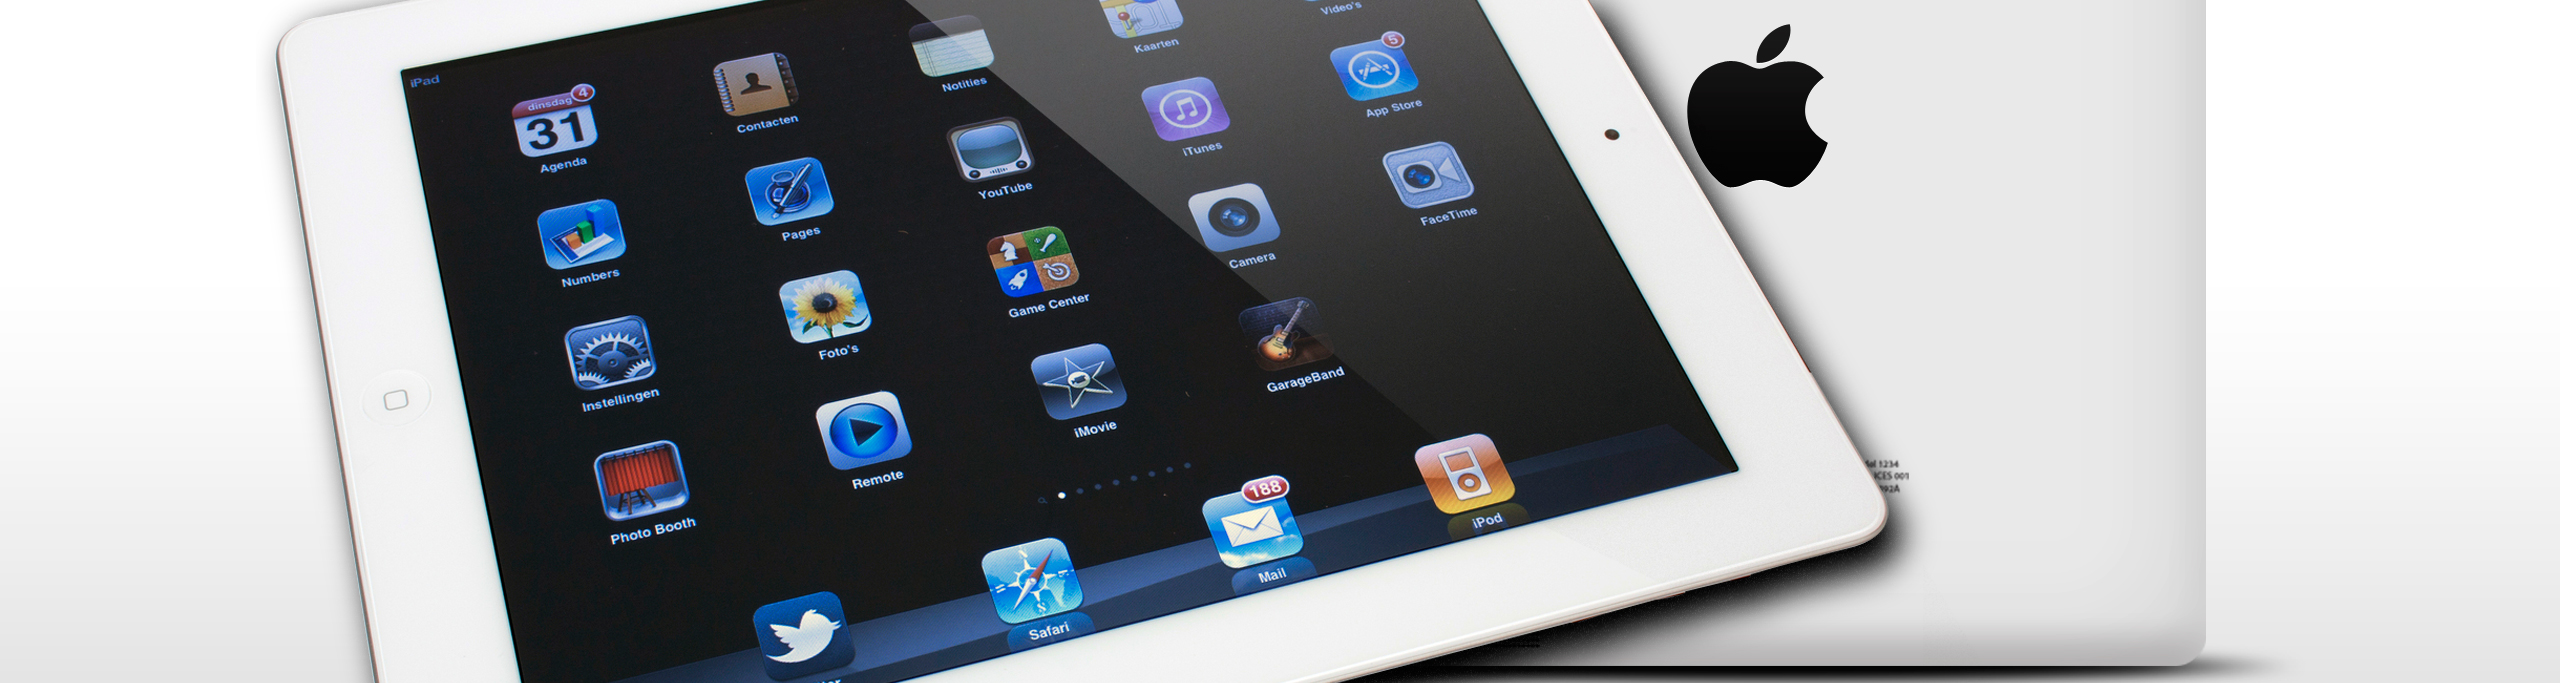 iPad 2 (2011)